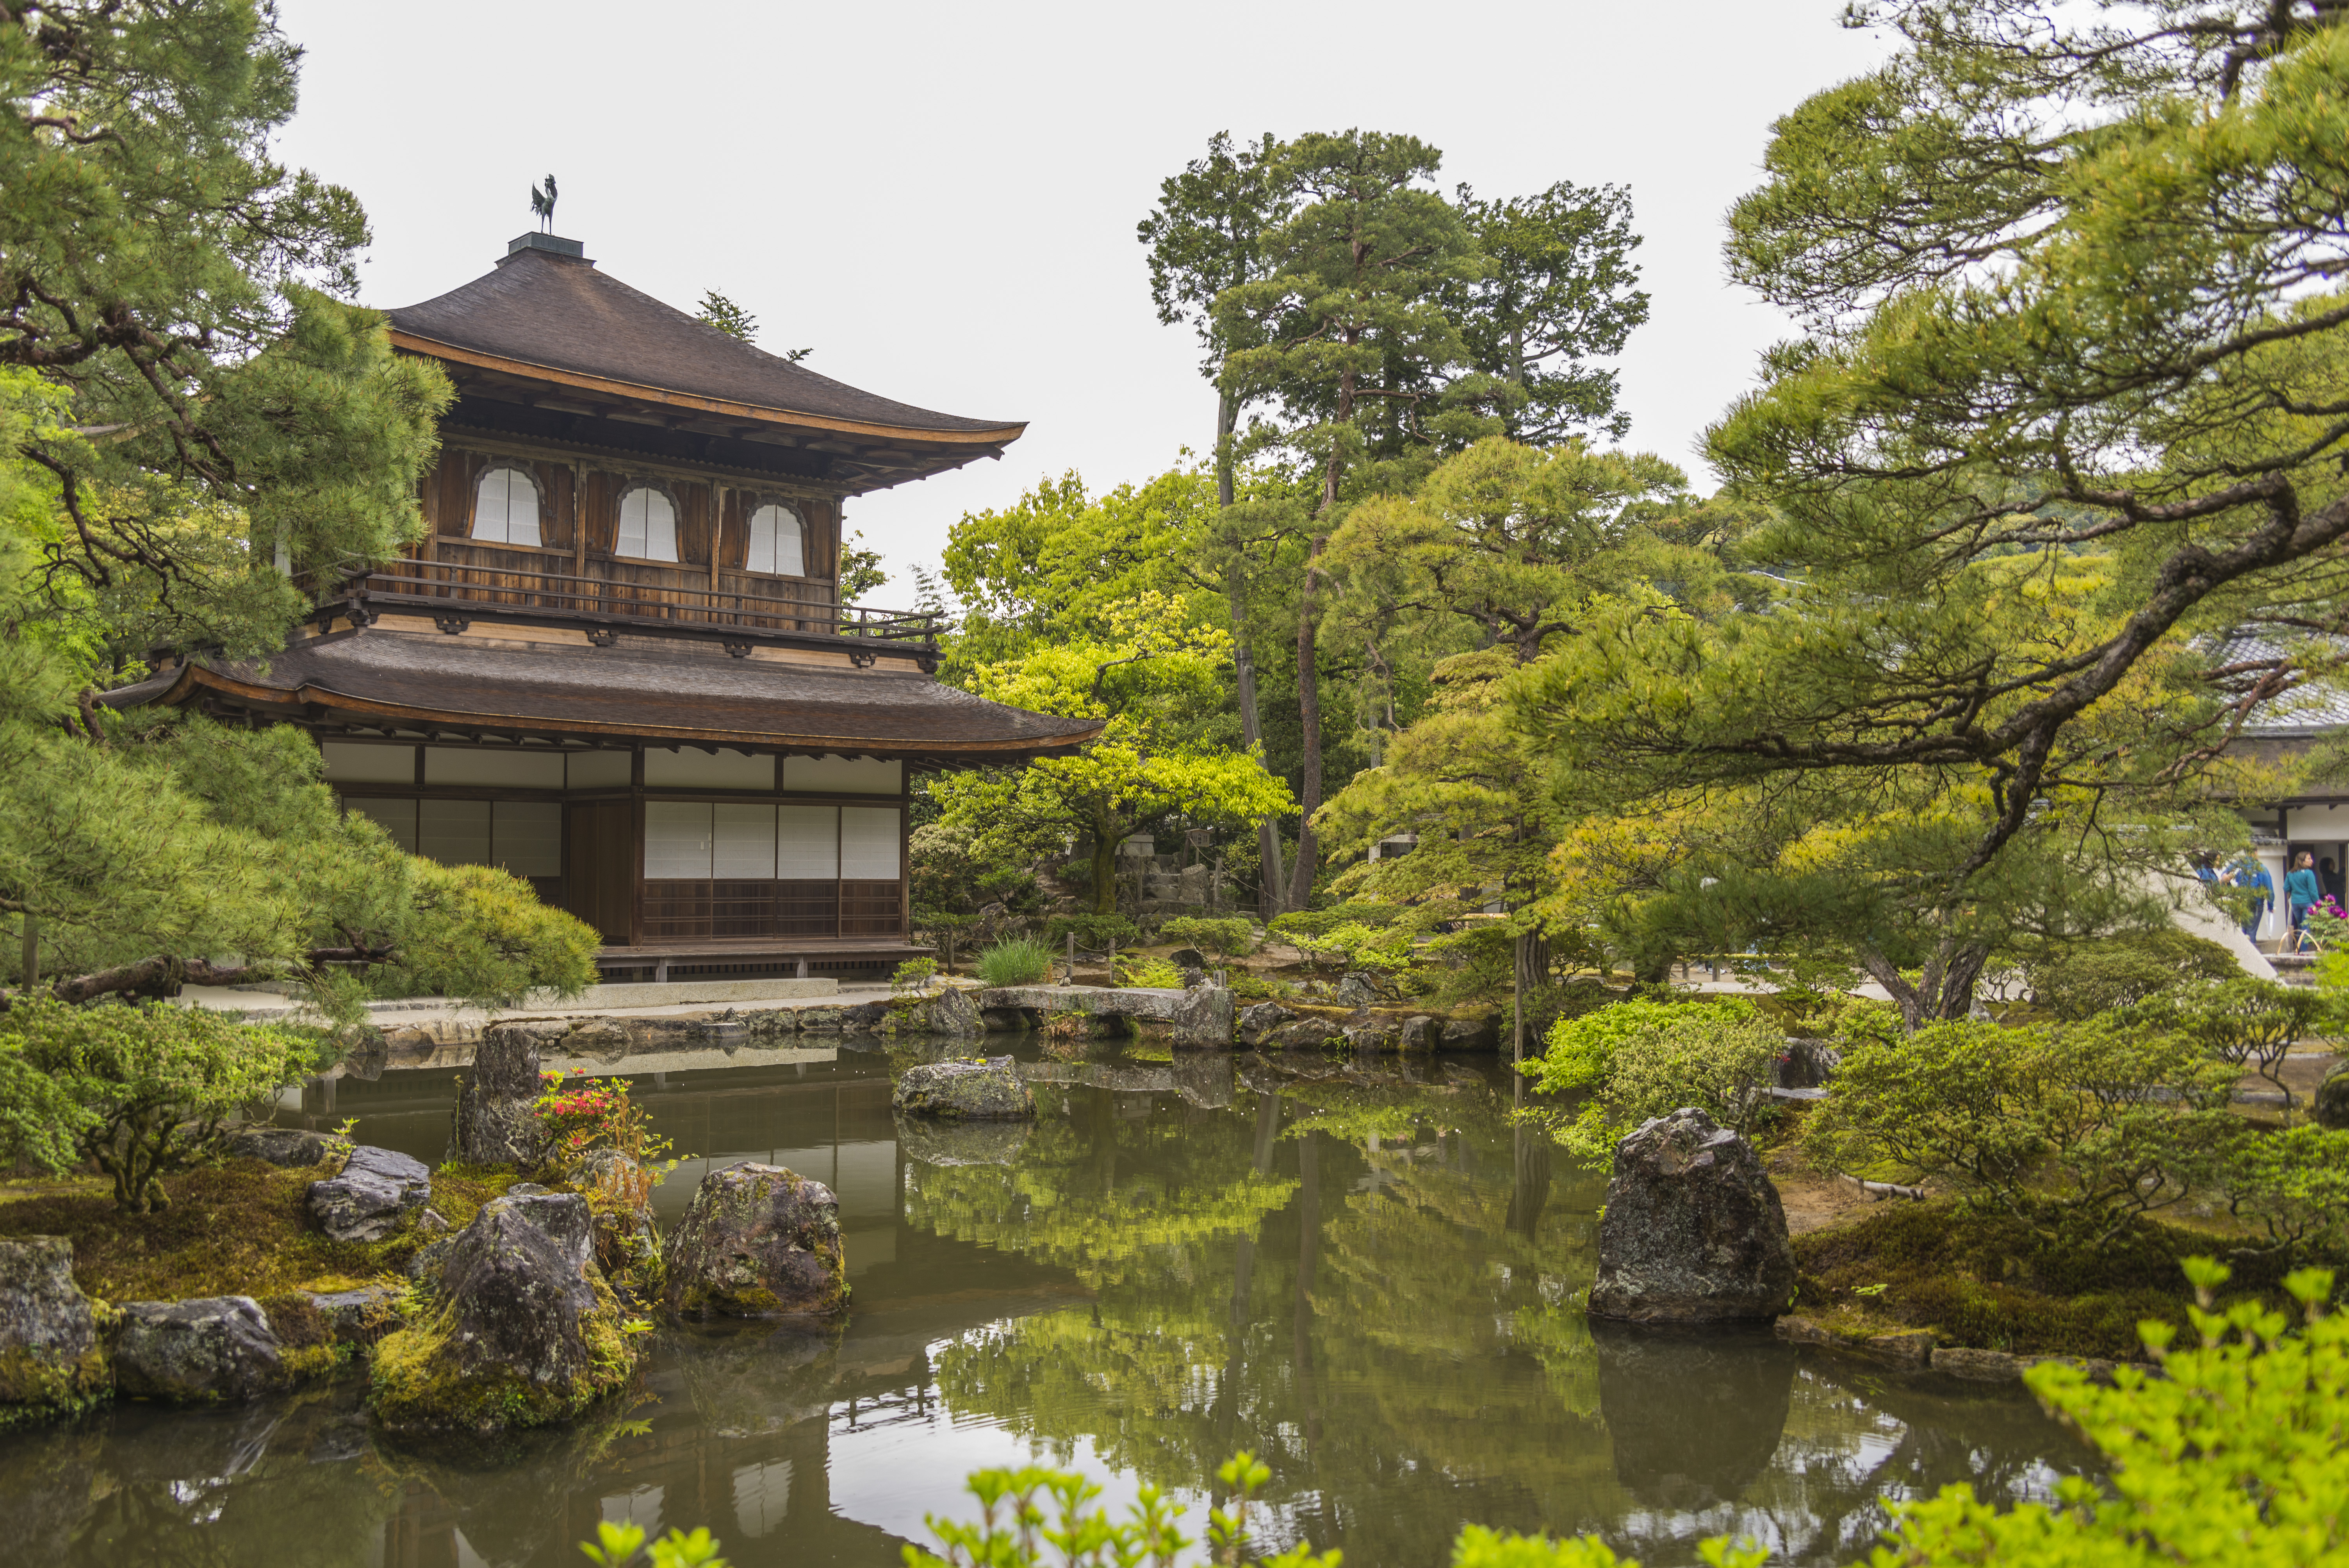 papier peint japon,la nature,architecture japonaise,jardin,étang,architecture chinoise